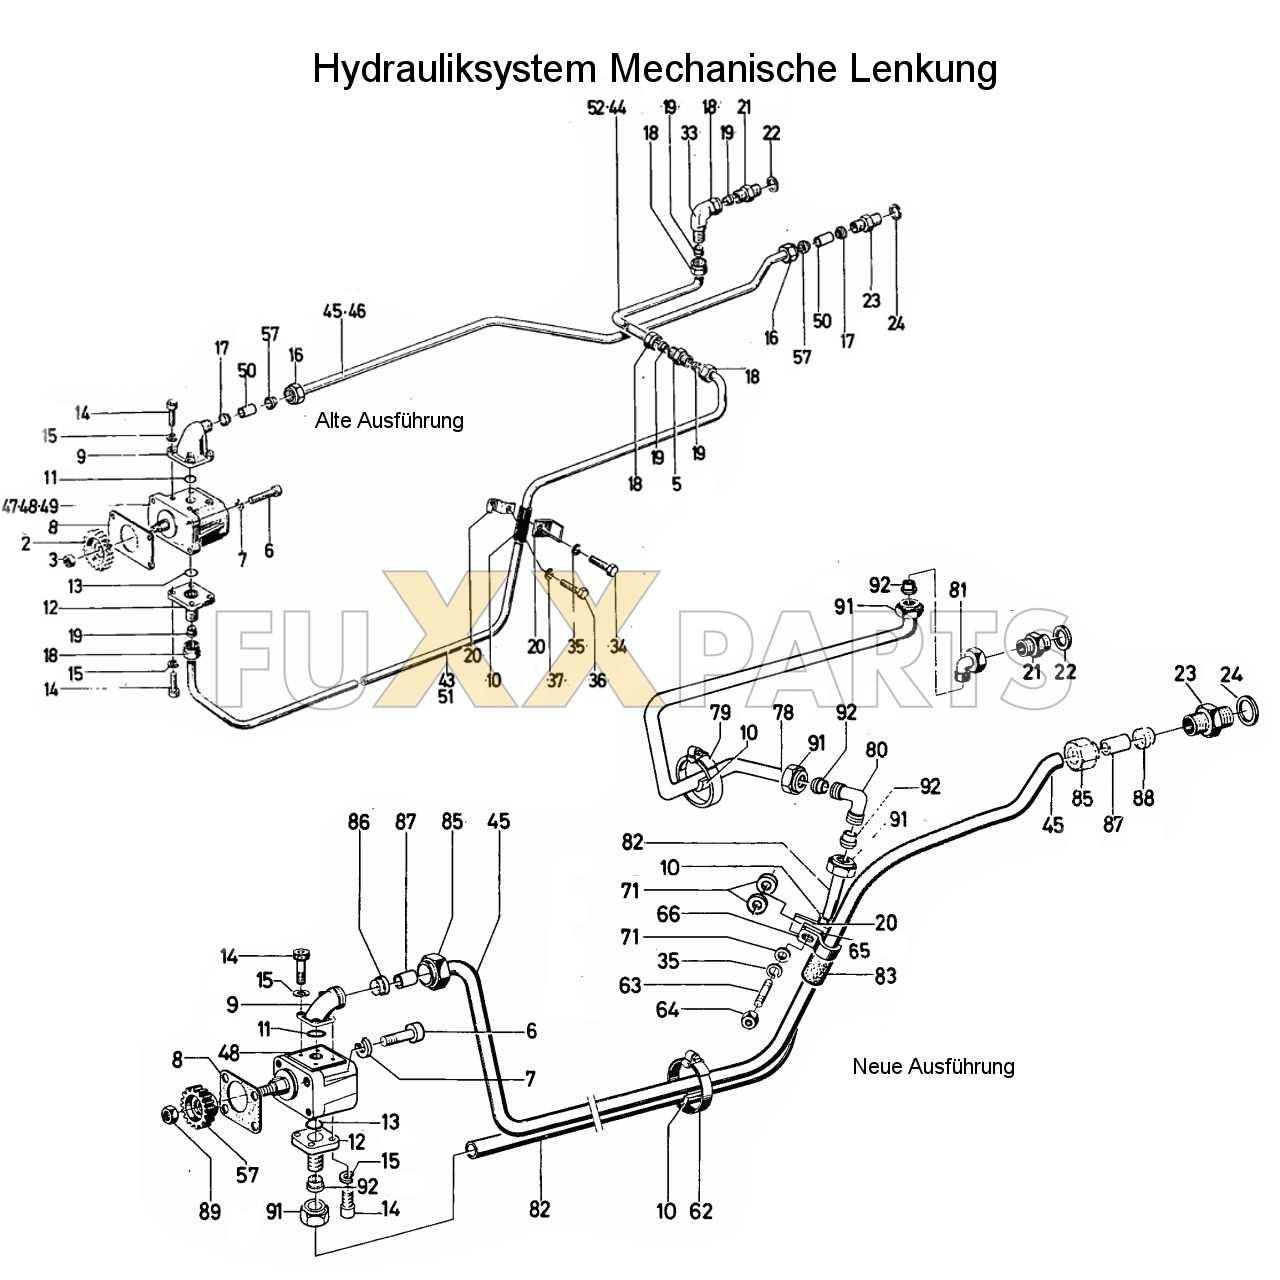 D 7206 Hydrauliksystem Mechanische Lenkung